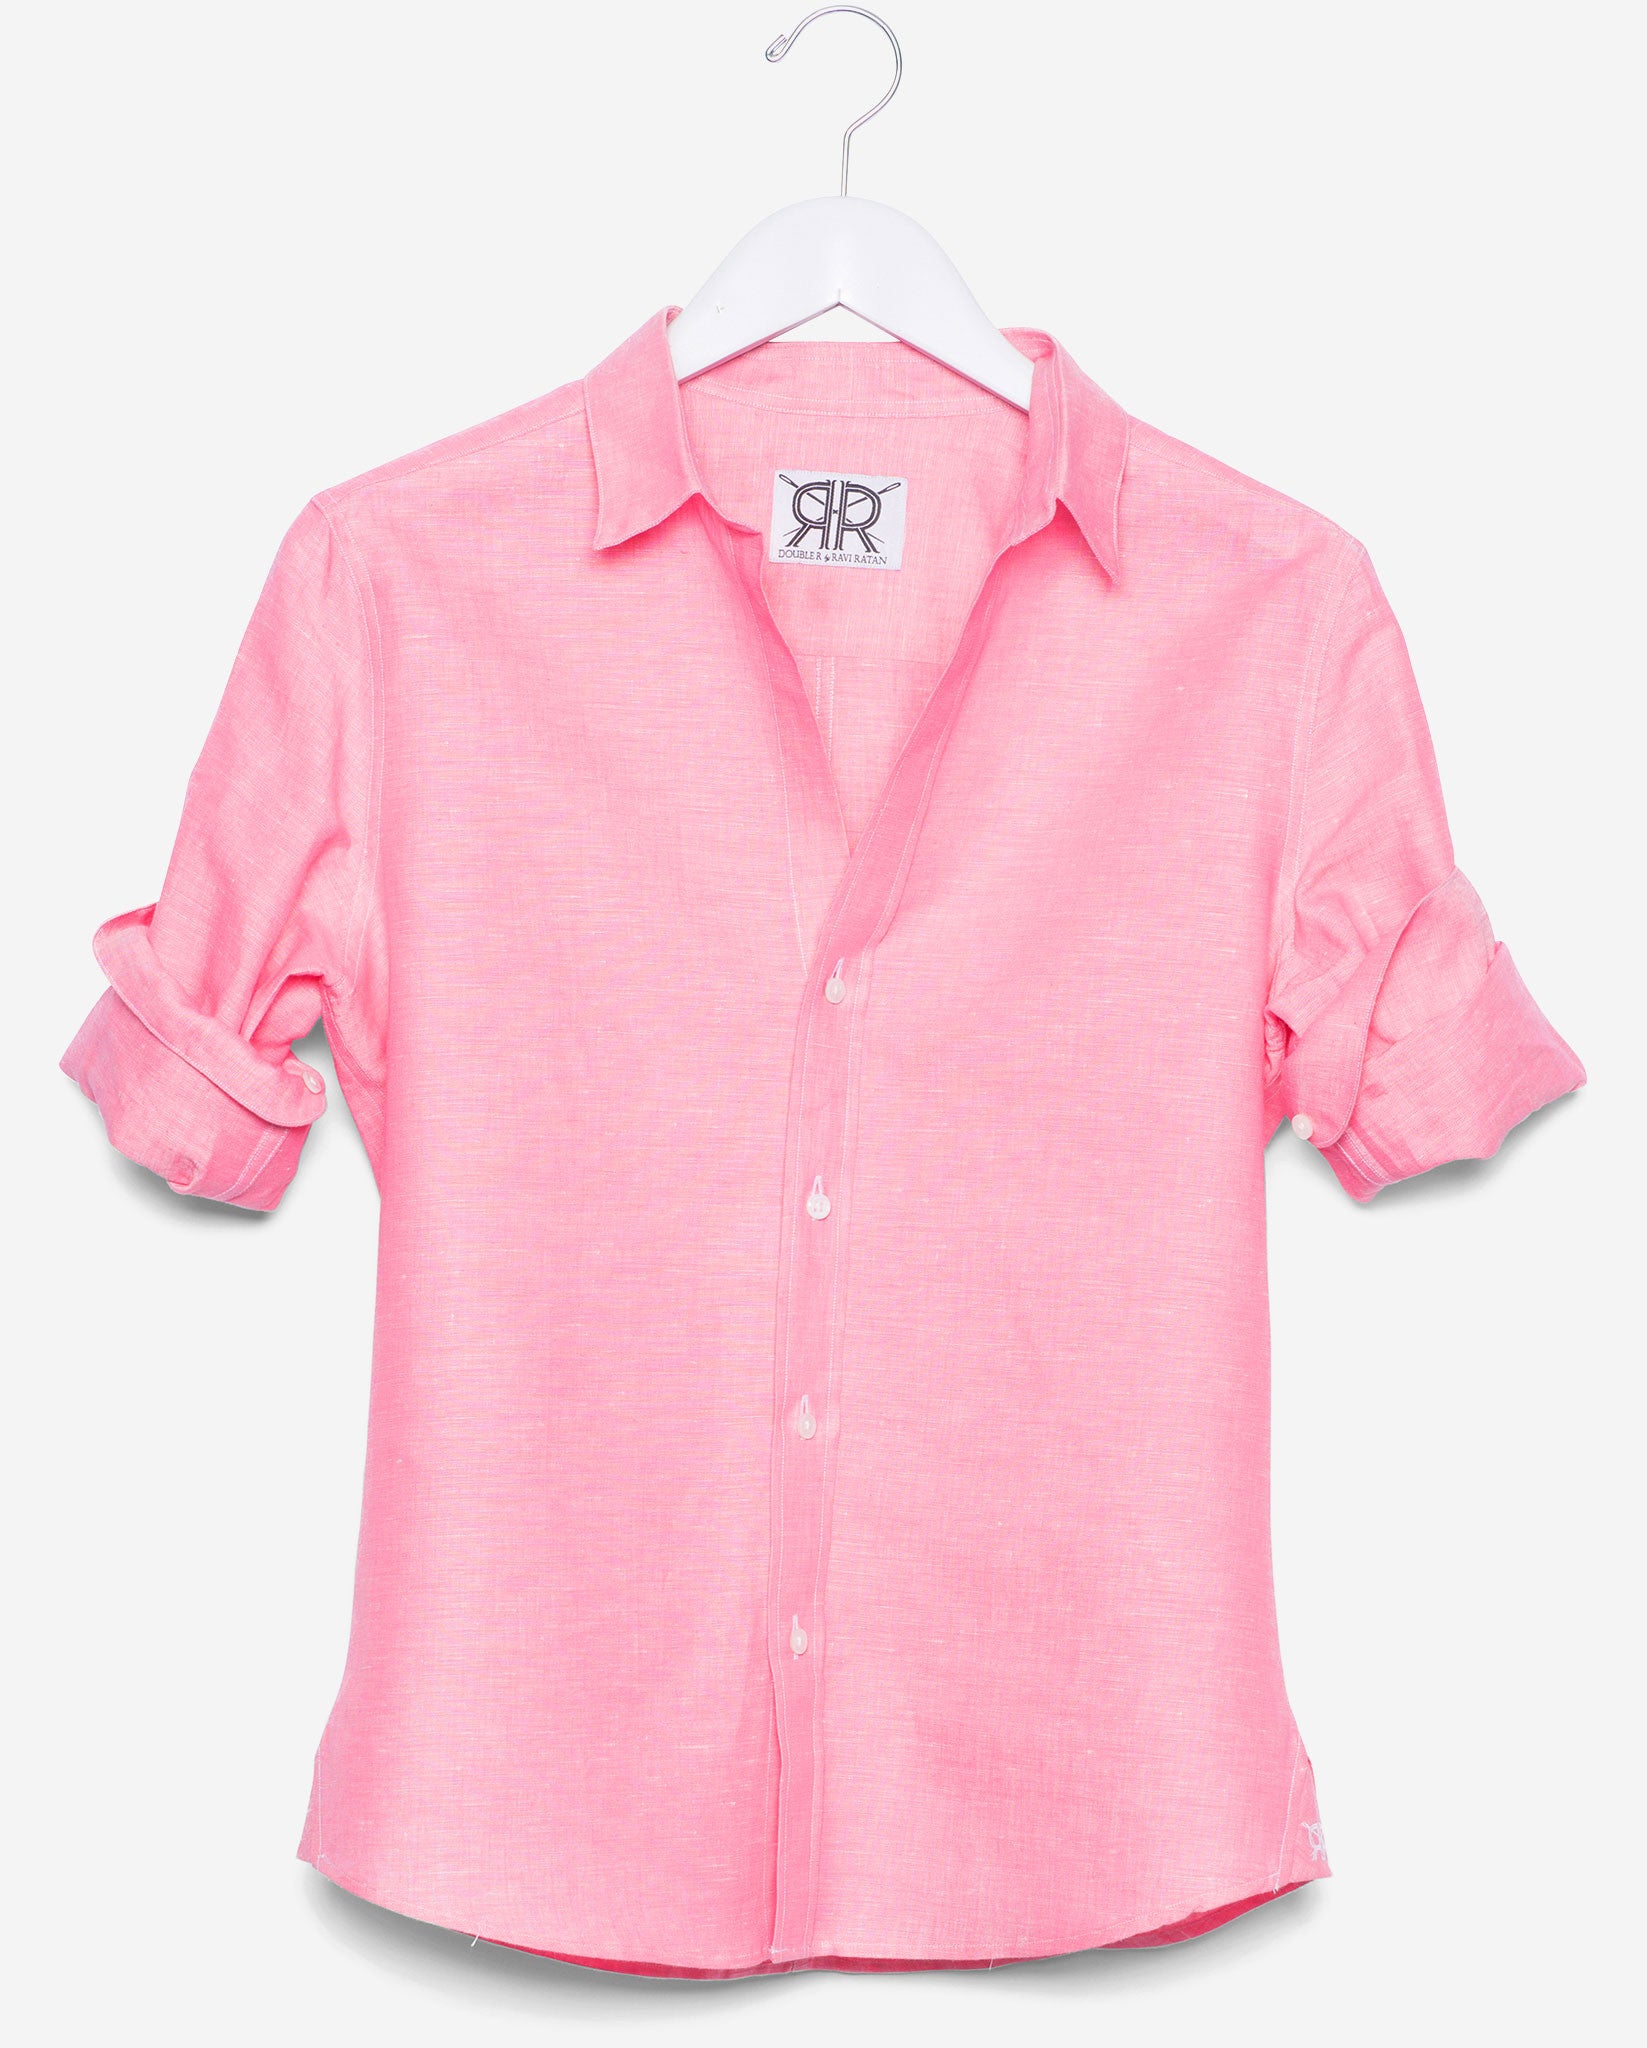 pink dress shirt womens